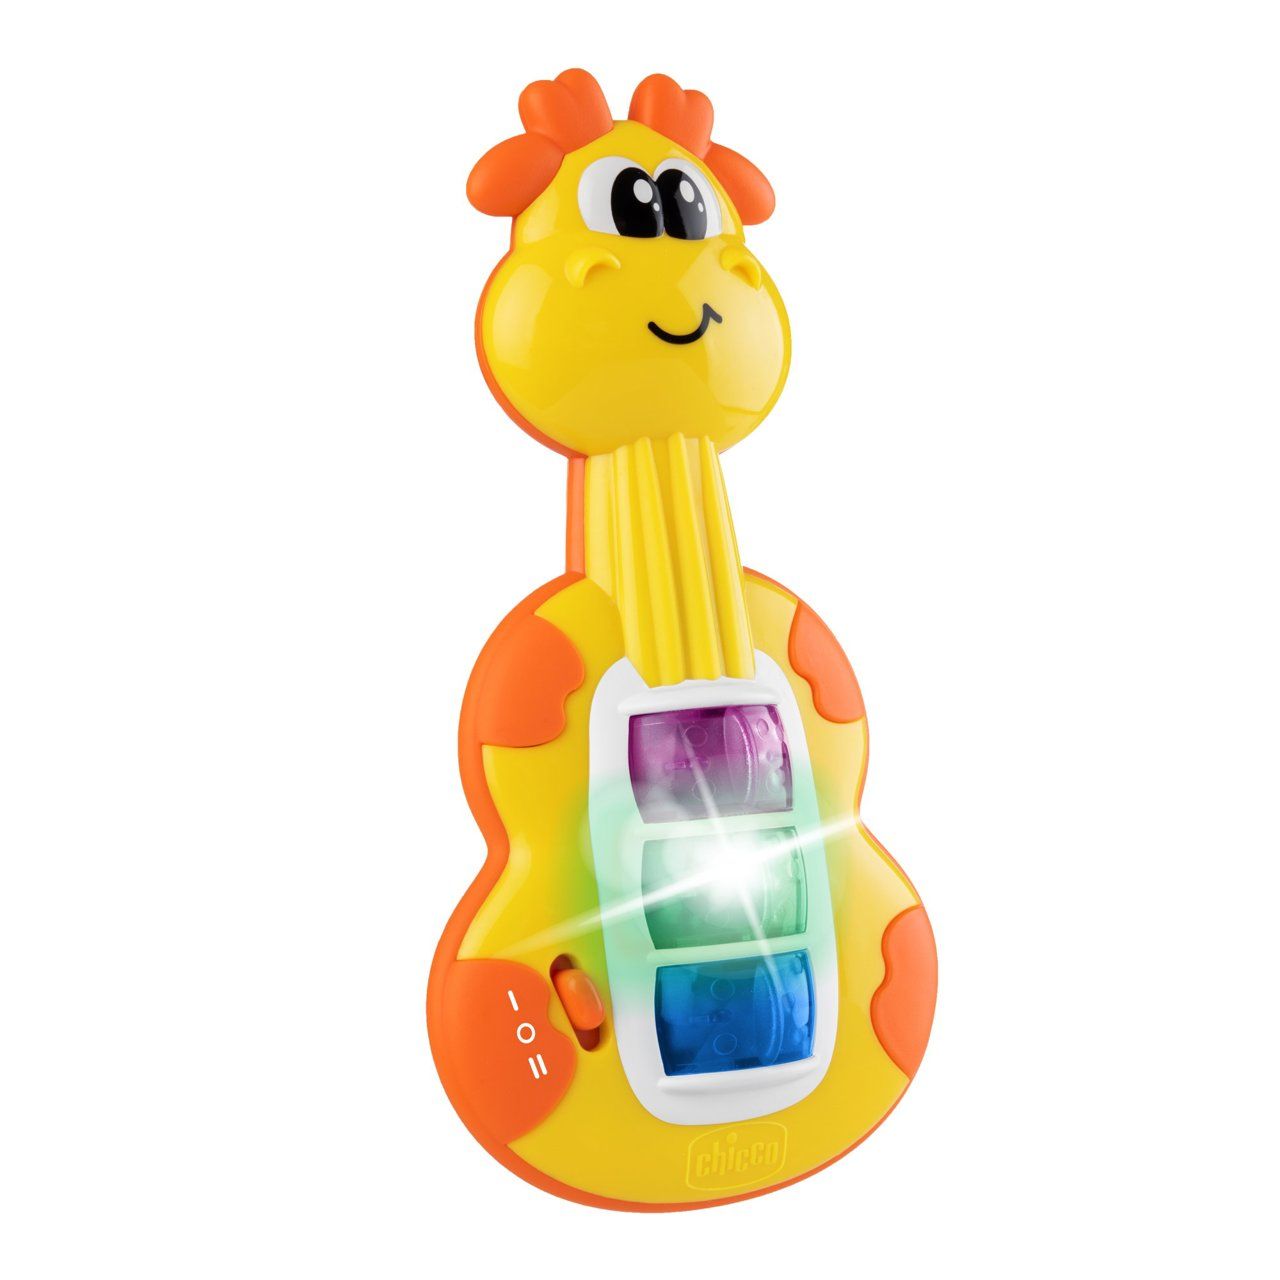 Іграшка музична Chicco Міні гітара, зі світловими ефектами, жовтий (11160.00) - фото 2